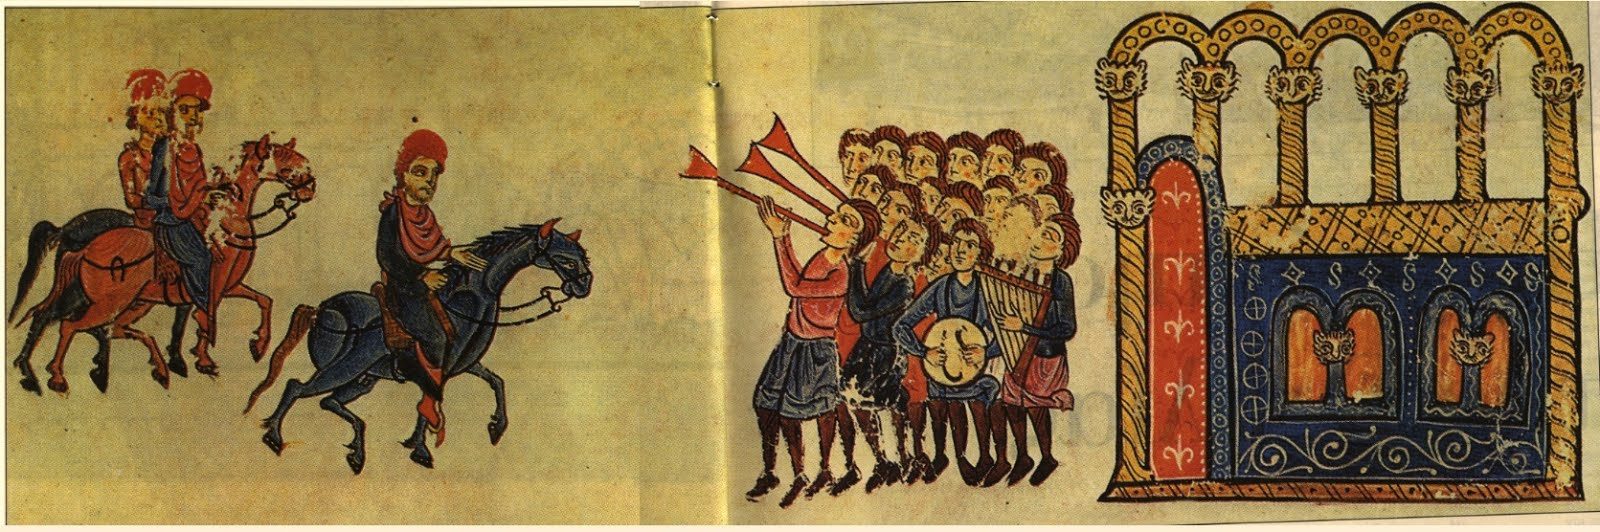 Ιωάννη Τσιμισκή13, κατέλαβε το Χαλέπι14 της Συρίας, που ήταν και η έδρα του Άραβα εμίρη ενώ κατέλαβε και την ακρόπολη της πόλης στις Φεβρουαρίου 963. Στις 15 Μαρτίου 963, ο αυτοκράτωρ Ρωμανός ο Β’ πέθανε και ύστερα από συσκέψεις που διενεργήθηκαν ανάμεσα σε Πατριάρχη, Σύγκλητο και ανώτερους παλατιανούς, απεφασίσθη να αναγορευθούν Αυτοκράτορες οι δύο ανήλικοι γιοί του Ρωμανού, Βασίλειος15 και Κωνσταντίνος16 και η αυτοκράτειρα Θεοφανώ17 να είναι επίτροπος τους, μέχρι την ενηλικίωσή τους. Ο Νικηφόρος Φωκάς, μόλις επληροφορήθη το θάνατο του αυτοκράτορα και κατ’ εντολήν της Θεοφανούς, πήγε στη Κωνσταντινούπολη, όπου διορίσθηκε Αρχιστράτηγος. Μόλις είδε τη Θεοφανώ, την ερωτεύτηκε αλλά και η αυτοκράτειρα τον ήθελε γιατί έβλεπε στο πρόσωπό του έναν αδιάφθορο και ειλικρινή προστάτη των συμφερόντων της δυναστείας. Ο ευνούχος Ιωσήφ Βρίγγας18 θέλοντας να αποτρέψει την επιρροή του Νικηφόρου Φωκά, επιχείρησε να τον συλλάβει (και πιθανώς να τον σκοτώσει) στην Κωνσταντινούπολη. Τελικά, ο Νικηφόρος εσώθη, με τη βοήθεια του πατριάρχη Κωνσταντινουπόλεως Πολυεύκτου19, του οποίου είχε κερδίσει την υποστήριξη. Έπειτα, ο Ιωσήφ Βρίγγας προσπάθησε, χωρίς όμως αποτέλεσμα, να προσεταιριστεί τους στρατηγούς Ιωάννη Τσιμισκή και Ρωμανό Κουρκούα20. Στις 3 Ιουλίου 963, τα στρατεύματα του Νικηφόρου Φωκά, που έδρευαν στη Καισάρεια της Καππαδοκίας επαναστάτησαν. Τον ανεκήρυξαν αυτοκράτορα με πρωτοβουλία του Τσιμισκή και προήλασαν μέχρι την Κωνσταντινούπολη. Μόλις έφτασαν απέναντι από την Βασιλεύουσα, ο Νικηφόρος Φωκάς ανακοίνωσε τα γεγονότα με επιστολές στον Βρίγγα, στον Πατριάρχη Πολύευκτο και στη Σύγκλητο, τους οποίους και κάλεσε να τον αναγνωρίσουν. Ο Βρίγγας κήρυξε «εκτός νόμου» τους οπαδούς και τους συγγενείς του Φωκά21 και προσπάθησε να συλλάβει τον πατέρα του Βάρδα Φωκά και τον αδελφό του Λέοντα Φωκά22. Ο Βάρδας Φωκάς κατέφυγε ως ικέτης στην Αγία Σοφία και ετέθη υπό την προστασία του Πατριάρχη Πολύευκτου ενώ ο Λέων Φωκάς κατόρθωσε να διαφύγει και να φτάσει στο στρατόπεδο του Νικηφόρου. Ο λαός της Κωνσταντινούπολης και ένα ένοπλο τμήμα 3.000 ανδρών με αρχηγό τον Βασίλειο Λακαπηνό23 κατέλαβε το Ναύσταθμο, προσμένοντας το Νικηφόρο Φωκά και τα επαναστατημένα στρατεύματά του. Ο Νικηφόρος Φωκάς μπήκε στην Κωνσταντινούπολη, όπου ο λαός τον υπεδέχθη και στις 16 Αυγούστου εστέφθη Αυτοκράτωρ στην Αγία Σοφία. Ο Βρίγγας κατέφυγε ικέτης στην Αγία Σοφία αλλά εξορίστηκε. 